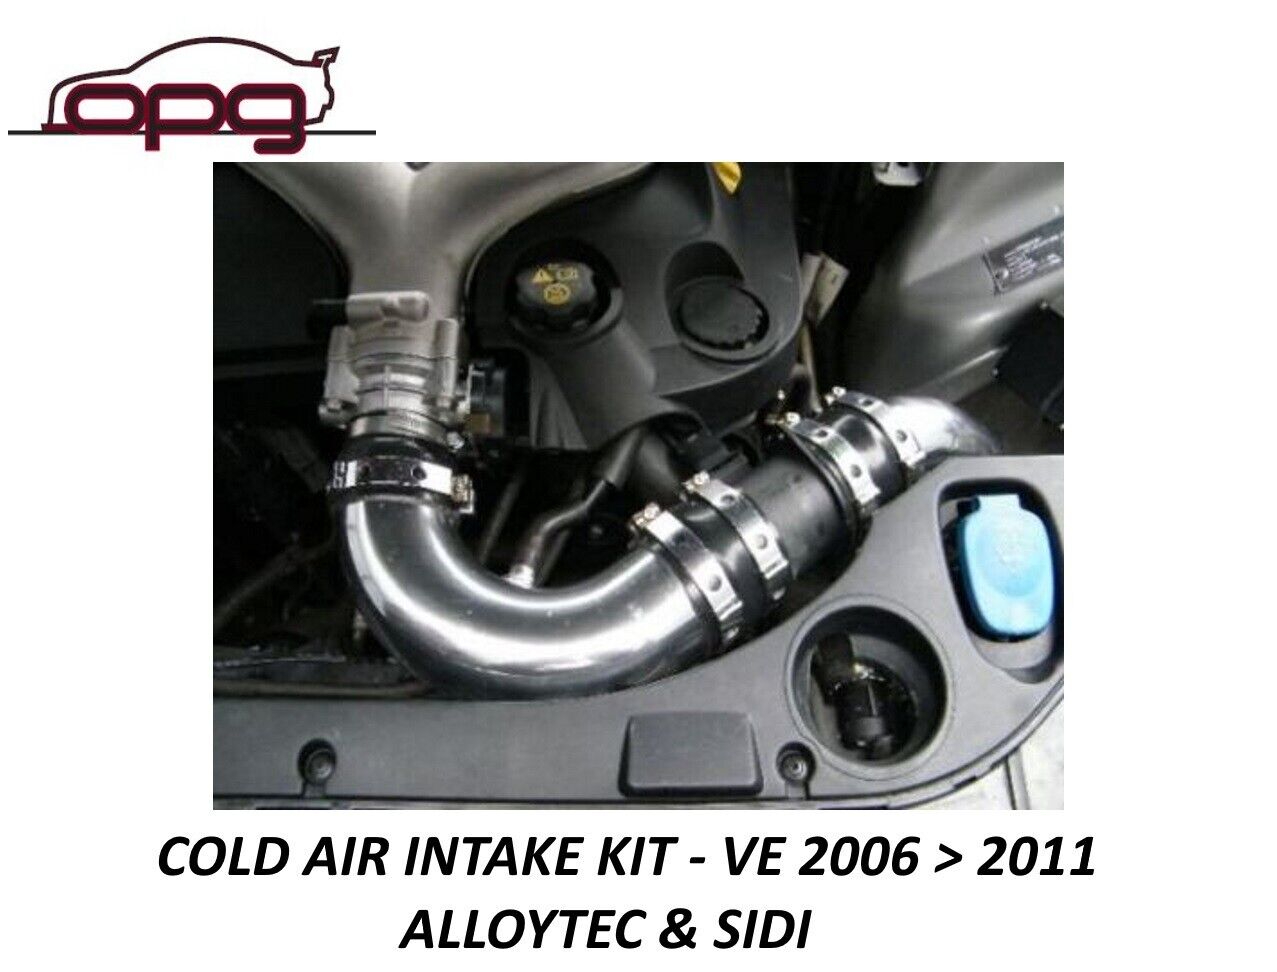 Cold Air Intake Kit for VE V6 Alloytec Some Sidi SV6 Thunder Calais WM 3.0 3.6